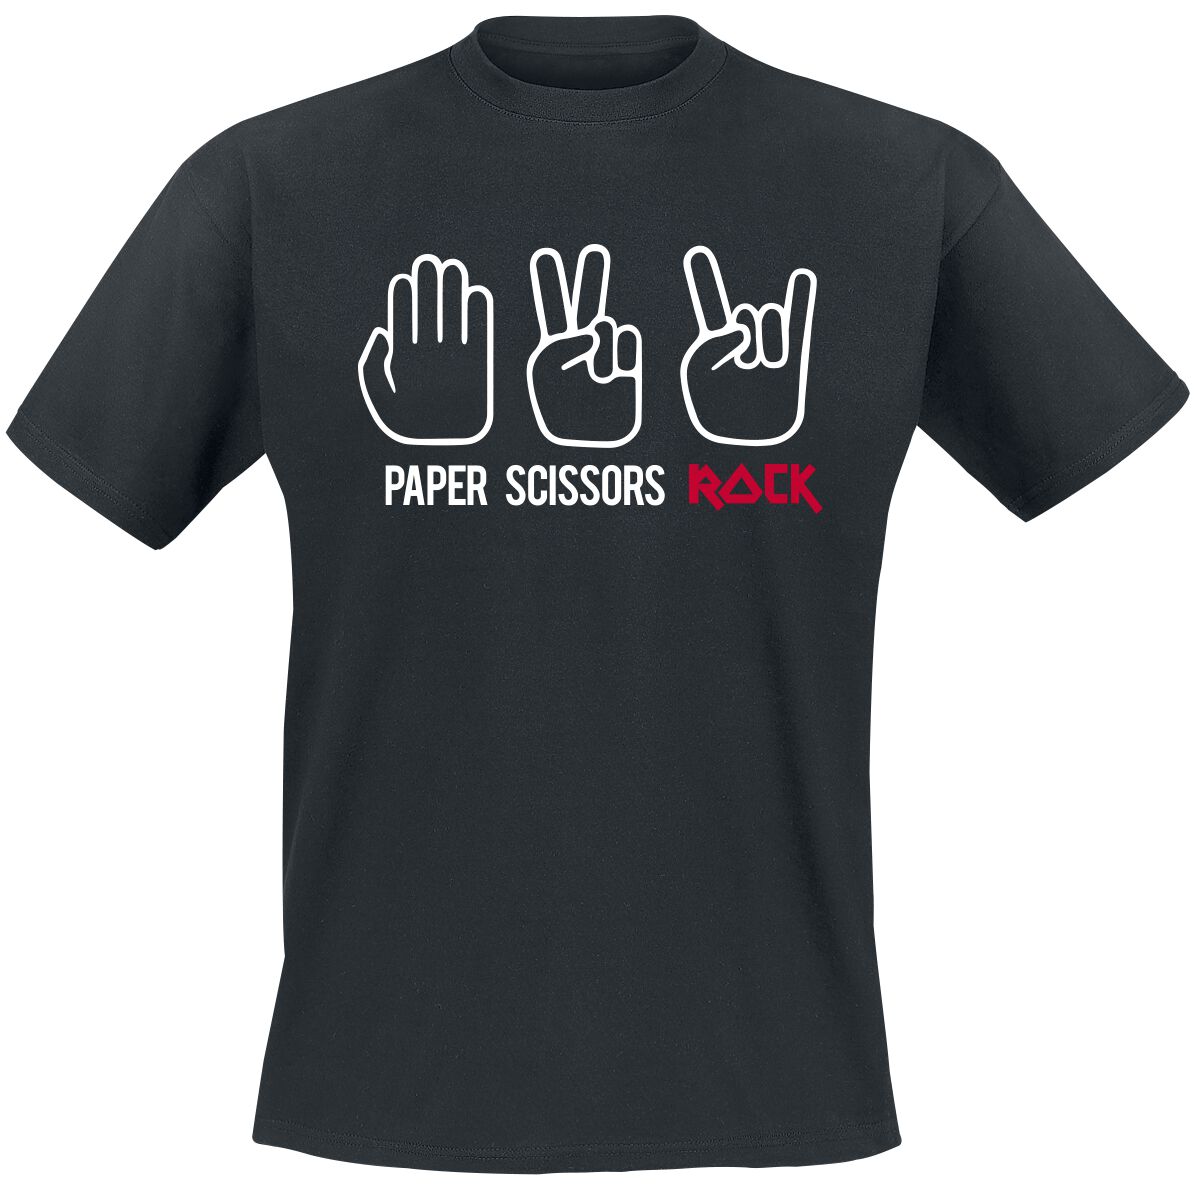 Sprüche T-Shirt - Paper Scissors Rock - S bis 3XL - für Männer - Größe 3XL - schwarz